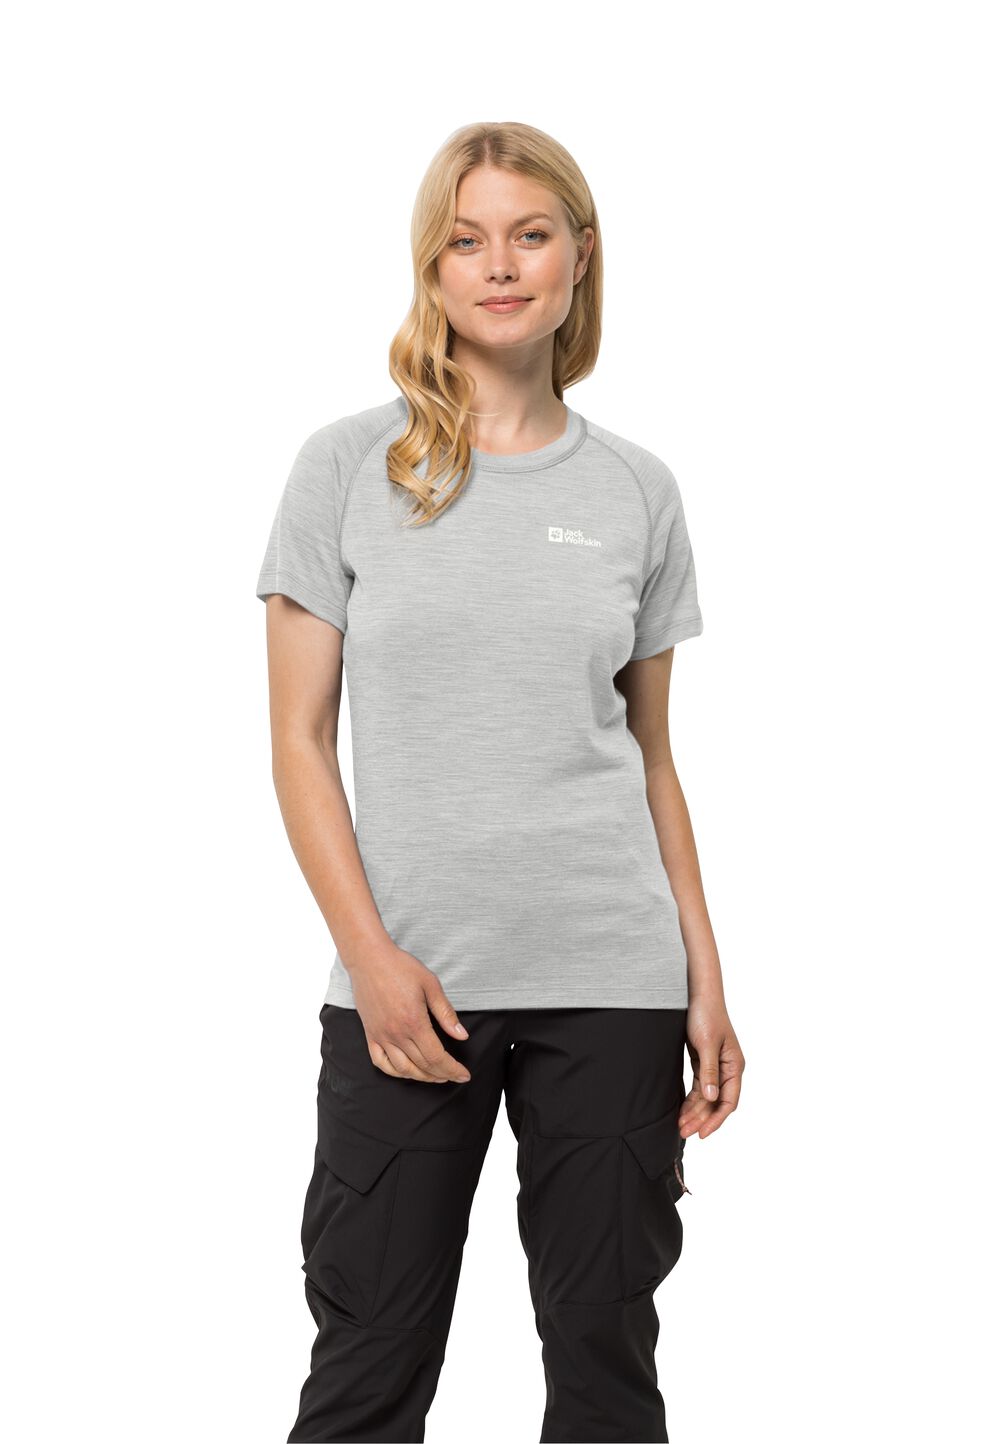 Jack Wolfskin Kammweg S S Women Dames T-shirt van merinoswol XL grijs cool grey